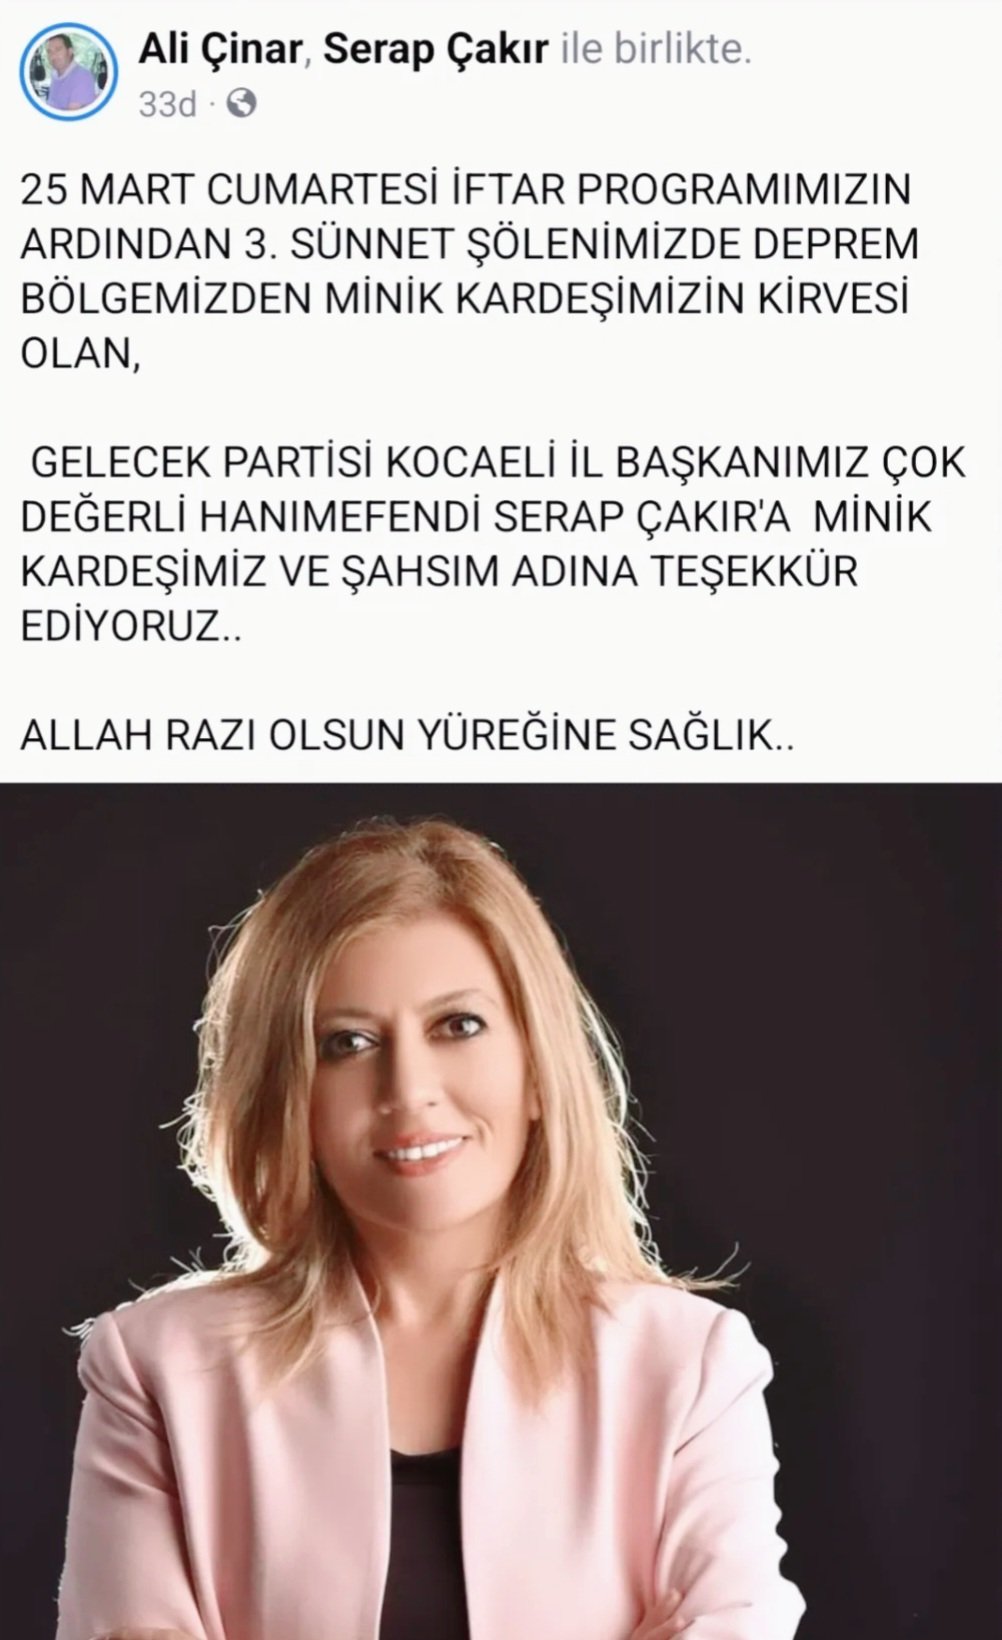 Körfez ilçemizde gazeteci Ali Çınar'ın düzenlediği iftar ve sünnet şöleninde İl Başkanımız Serap Çakır depremzede kardeşimizin kirvesi oldu.